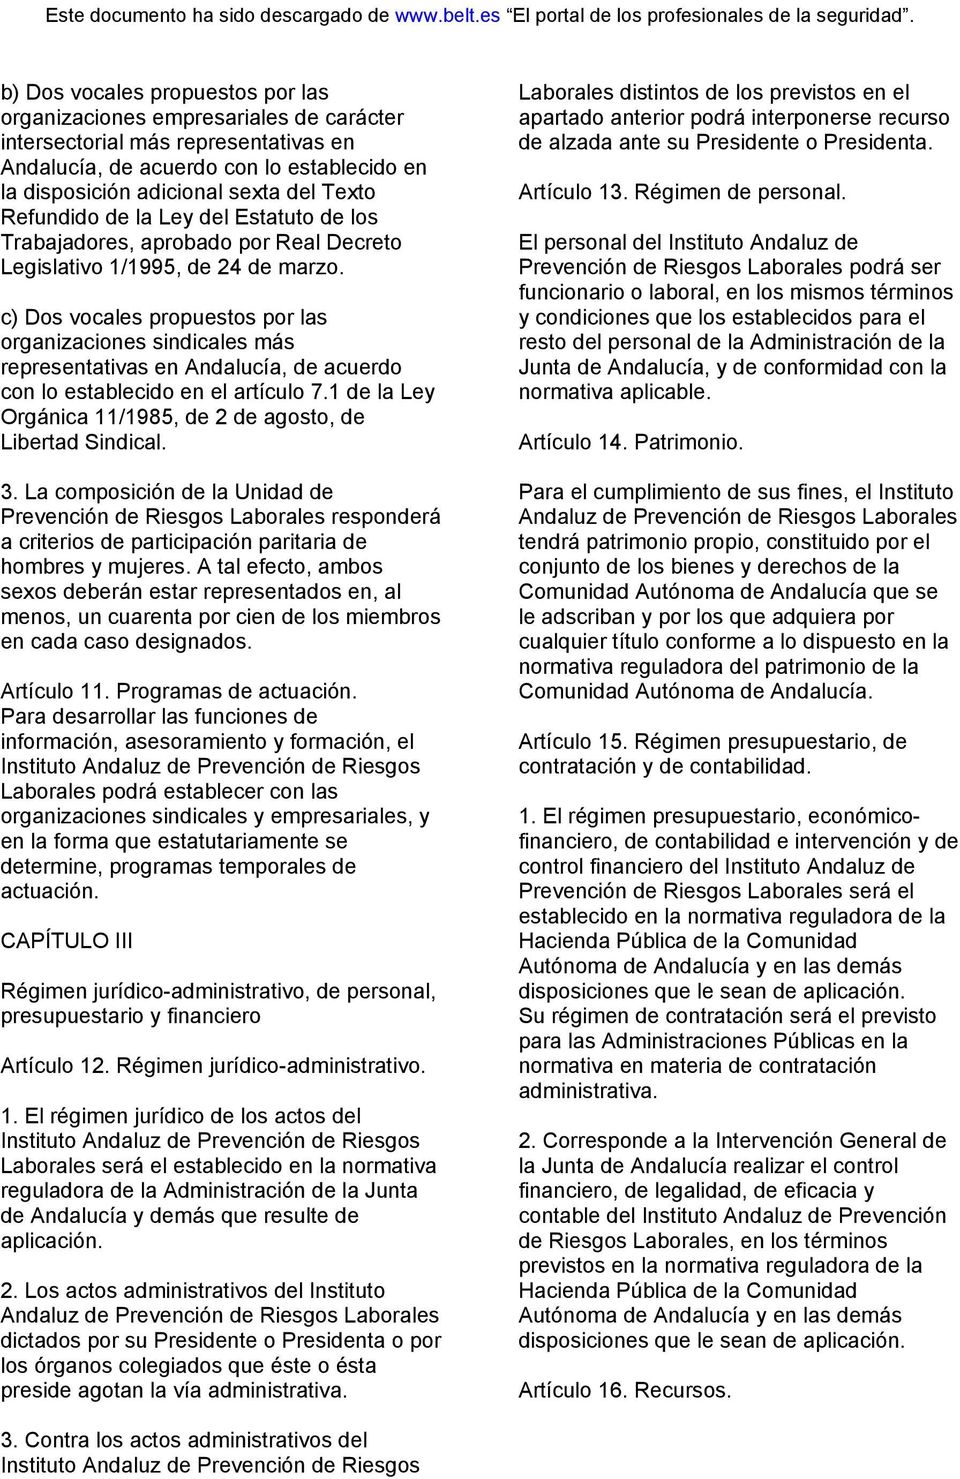 c) Dos vocales propuestos por las organizaciones sindicales más representativas en Andalucía, de acuerdo con lo establecido en el artículo 7.